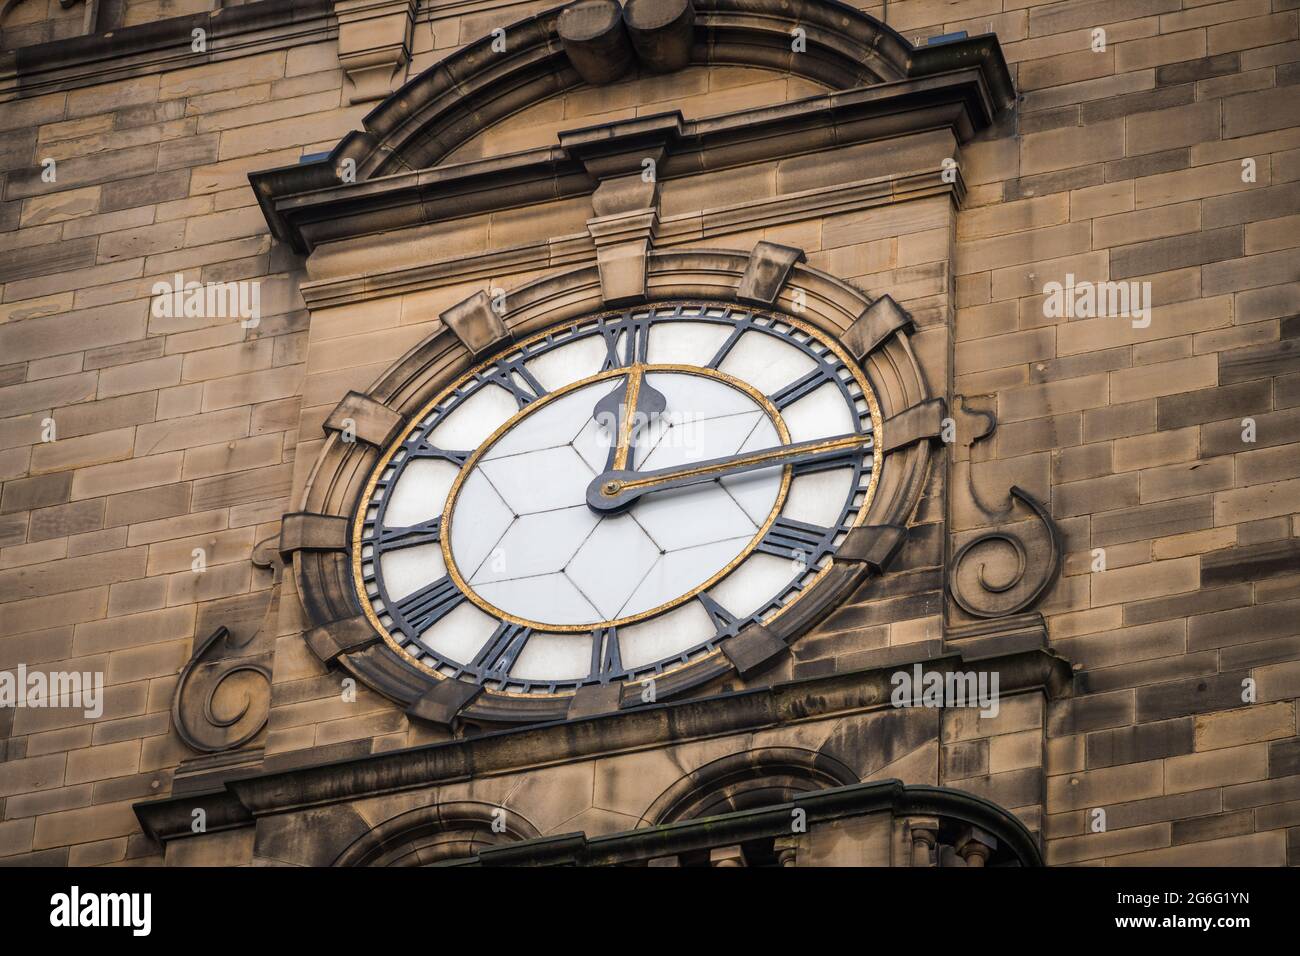 Quarto passato dodici 15:12 orologio faccia che mostra il tempo con i numeri romani su storico vecchio edificio in pietra. Quindici minuti dopo le dodici. Foto Stock